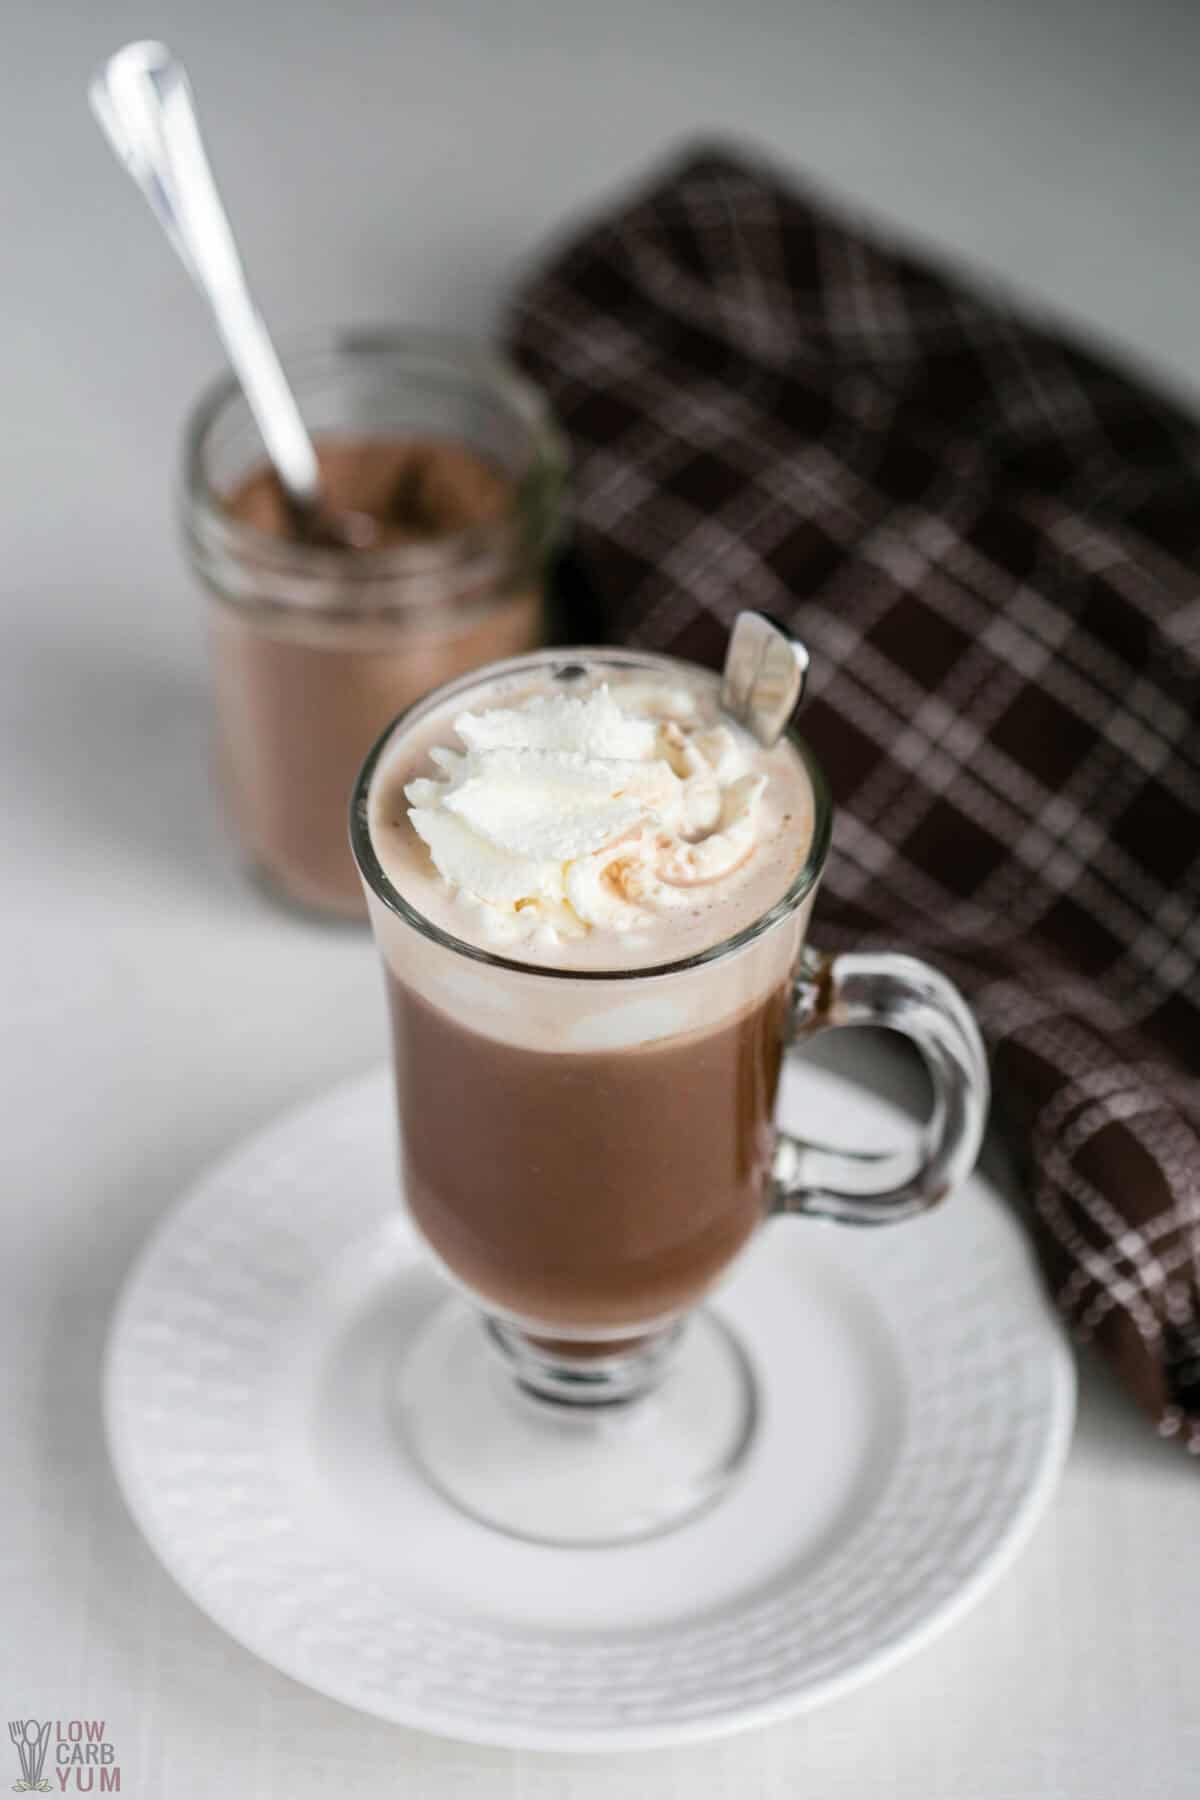 Milchfreie heiße Schokolade im Glasbecher mit Mischung im Glas.